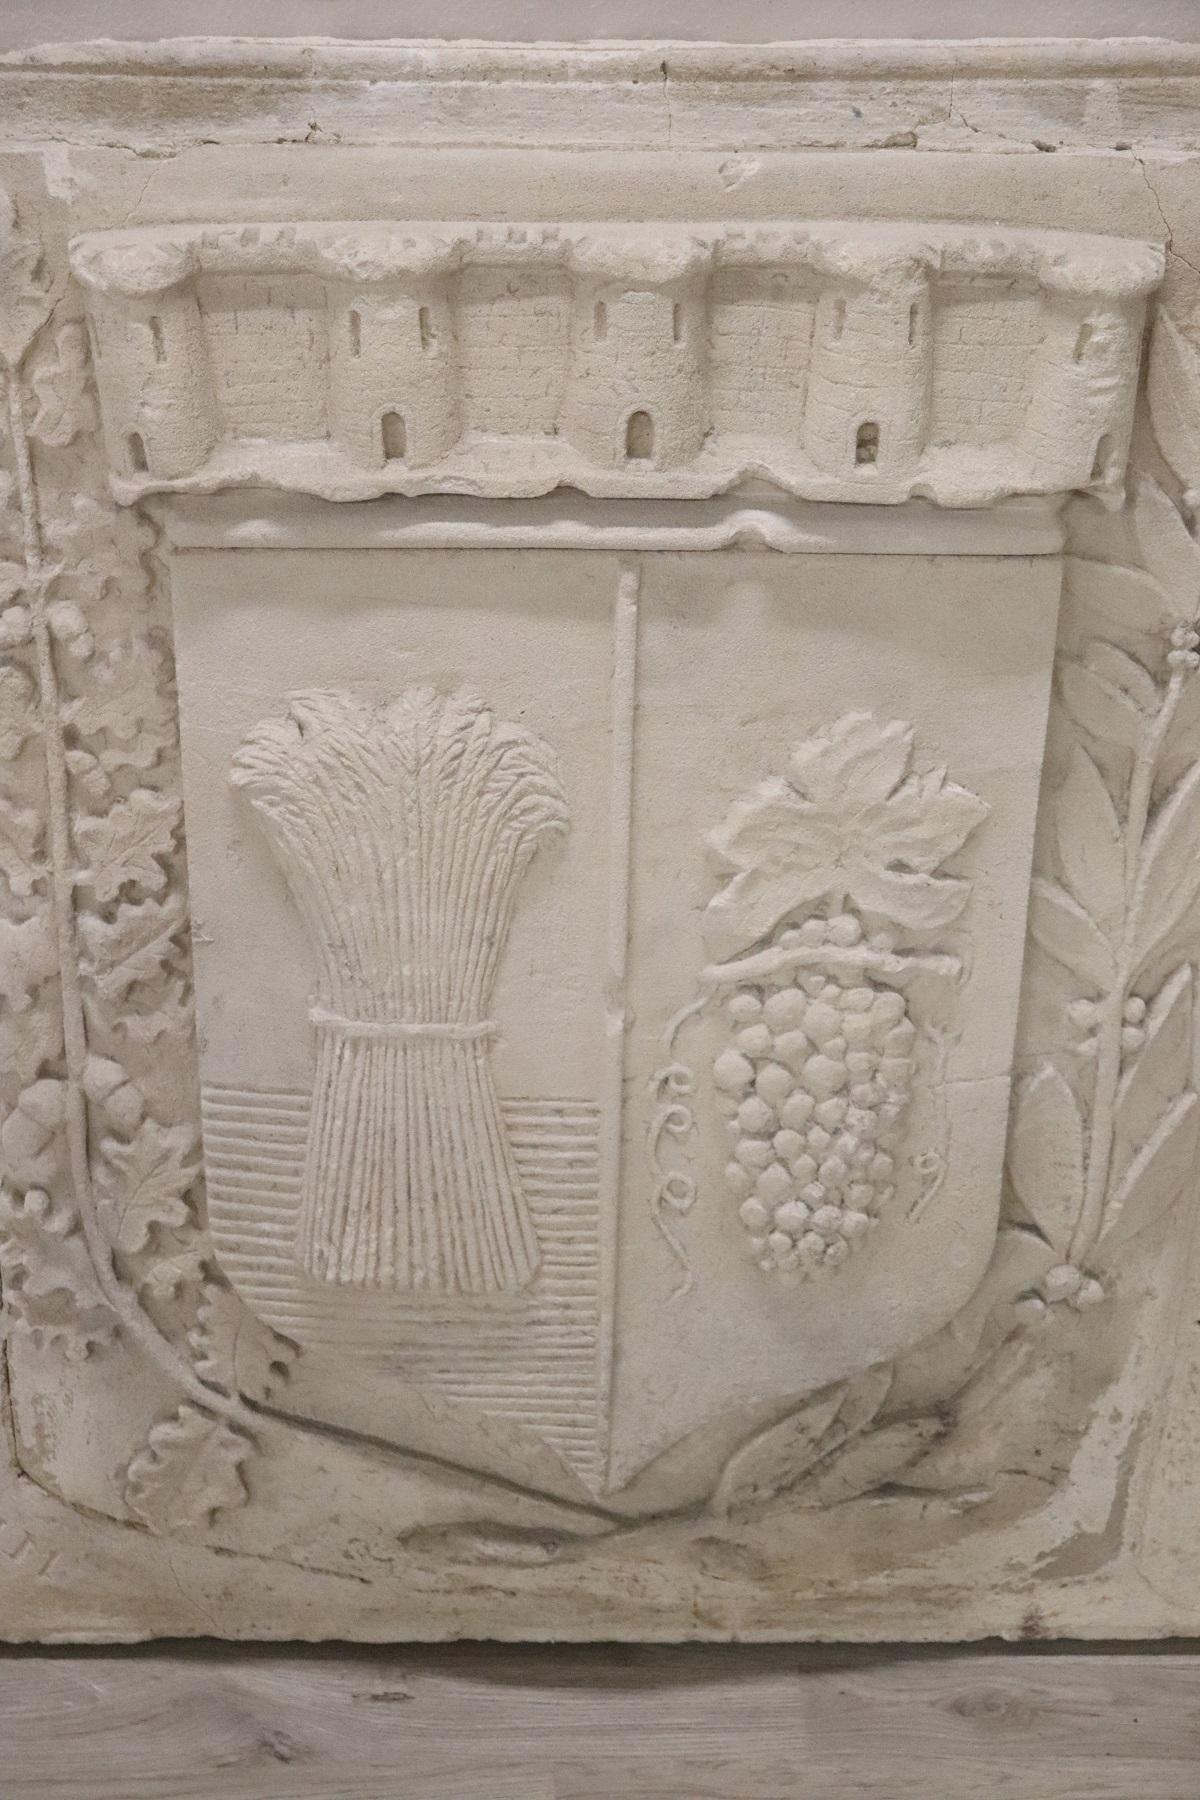 Armoiries héraldiques anciennes en pouzzolane. La pouzzolane est un type de ciment ancien. Les armoiries sont de grandes dimensions et proviennent d'une famille qui s'occupait d'agriculture dans le nord de l'Italie. Dans les armoiries, on peut voir